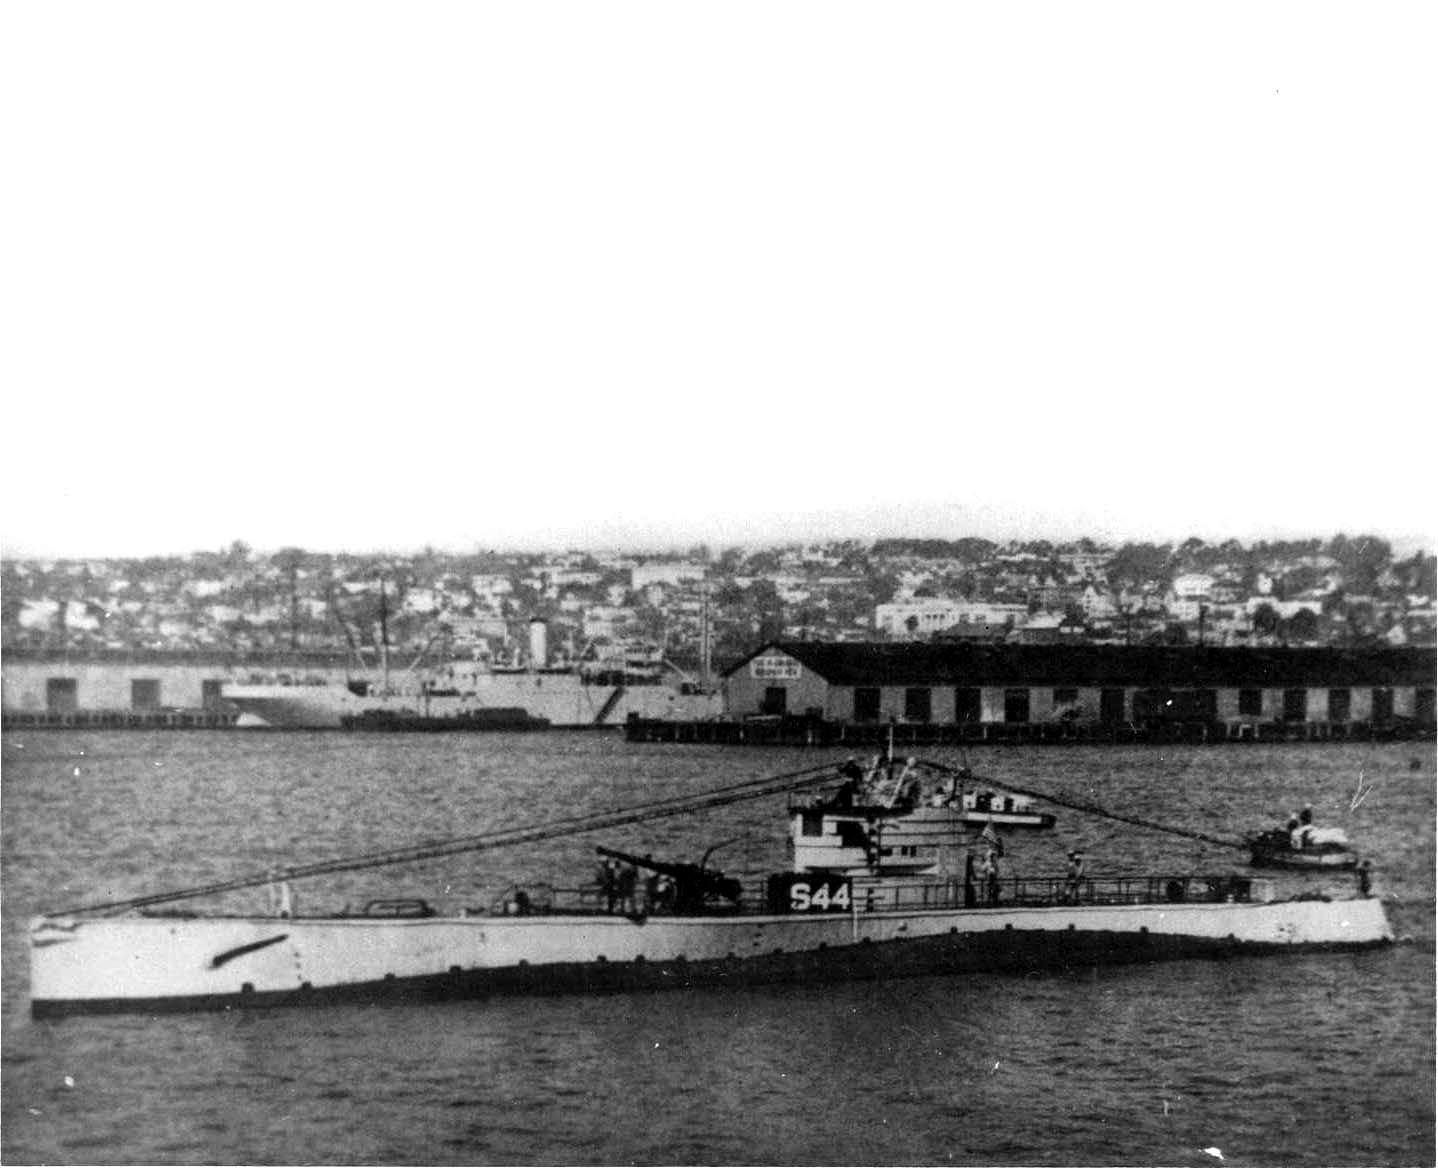 USS S-44, 1920s or 1930s